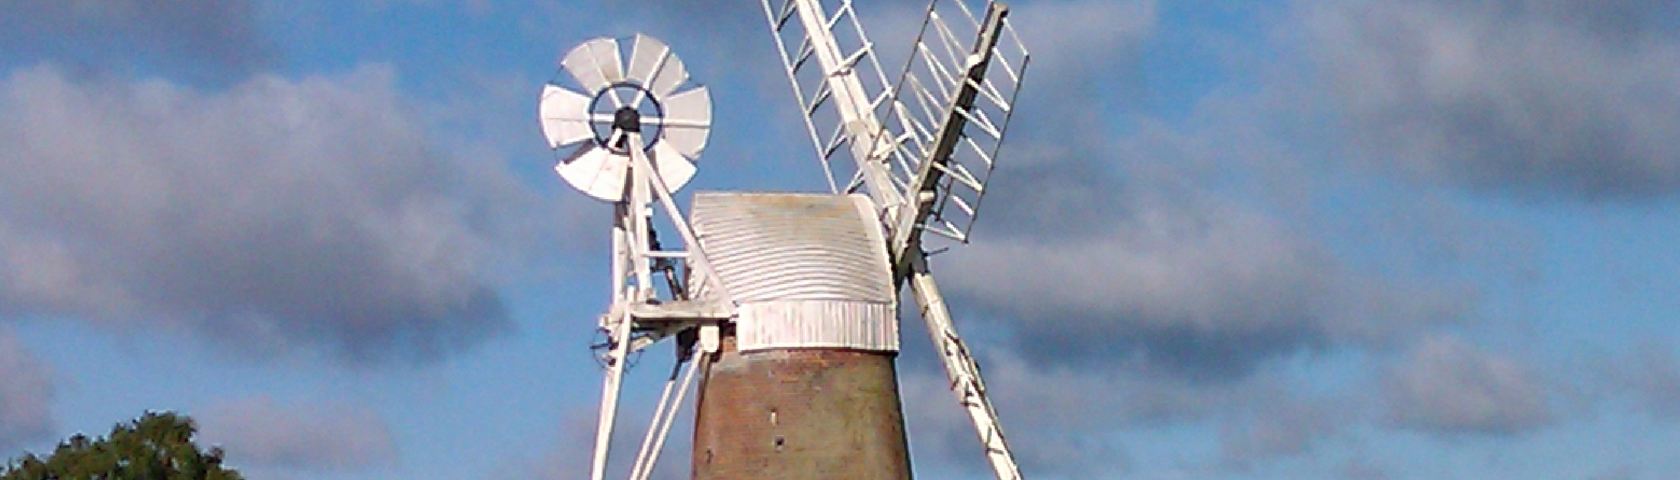 Pumping Windmill